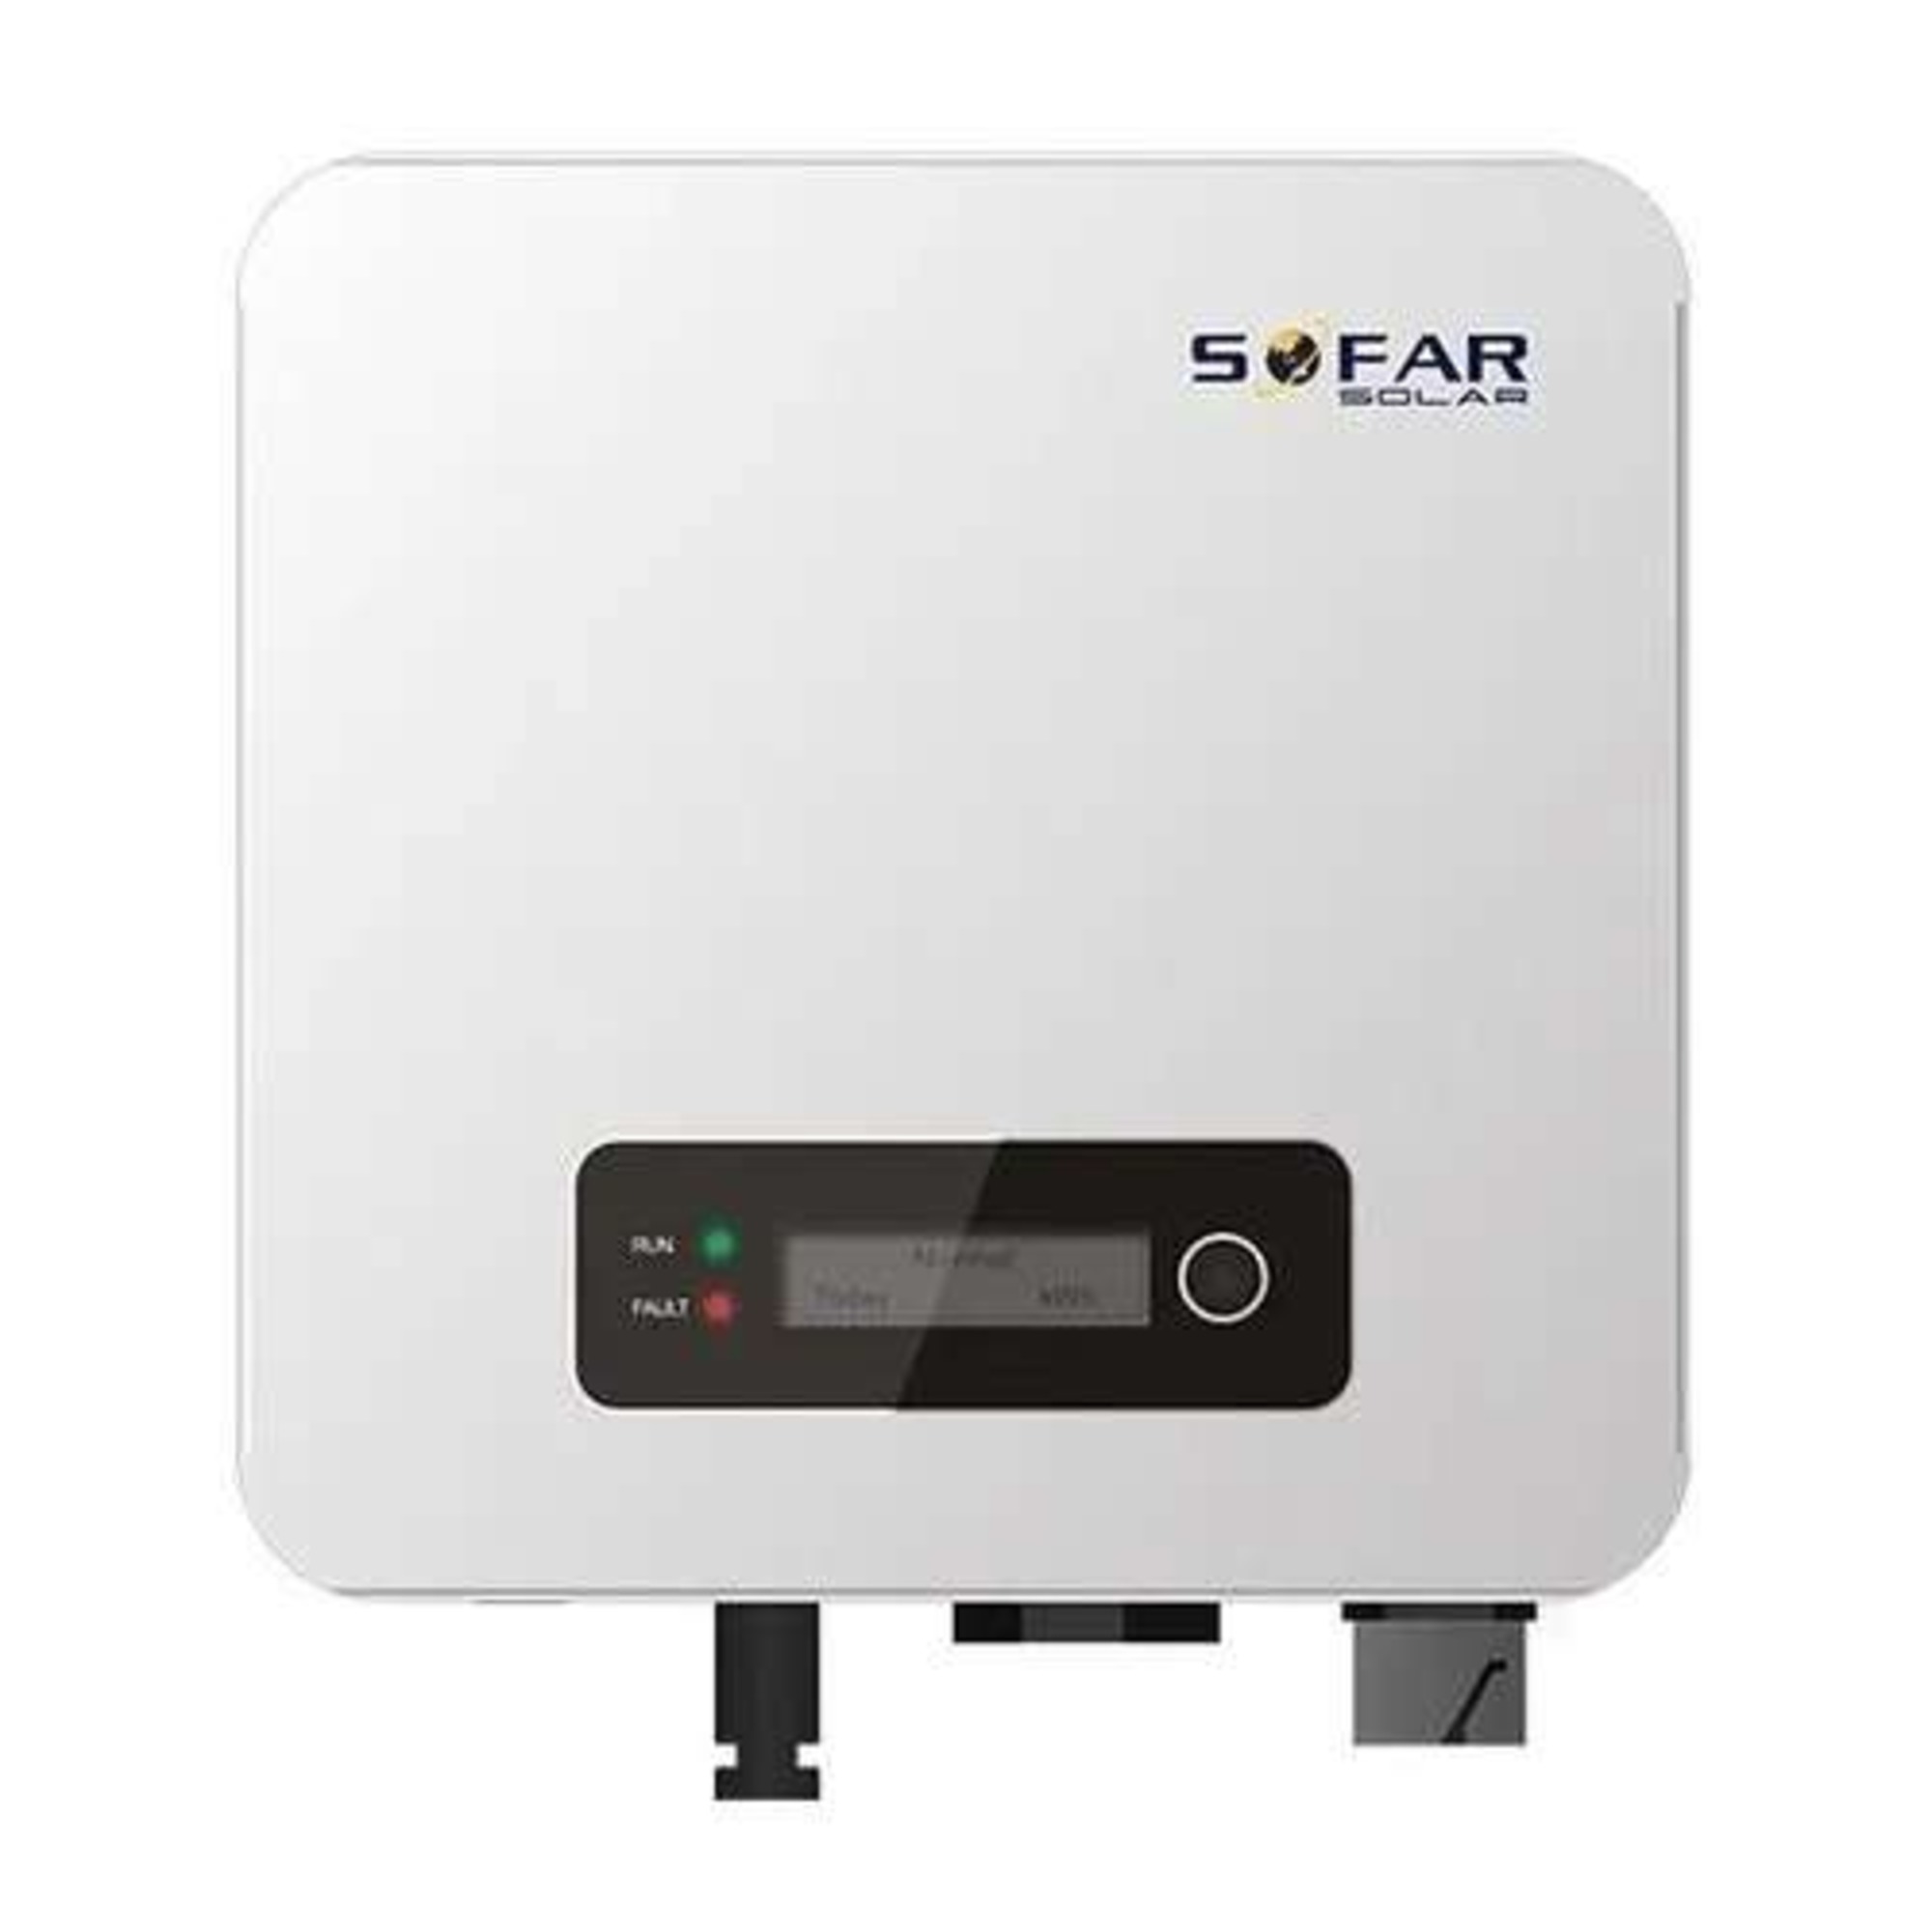 SOFAR 4KTLM-G3 Single Phase 4kw On Grid Inverter